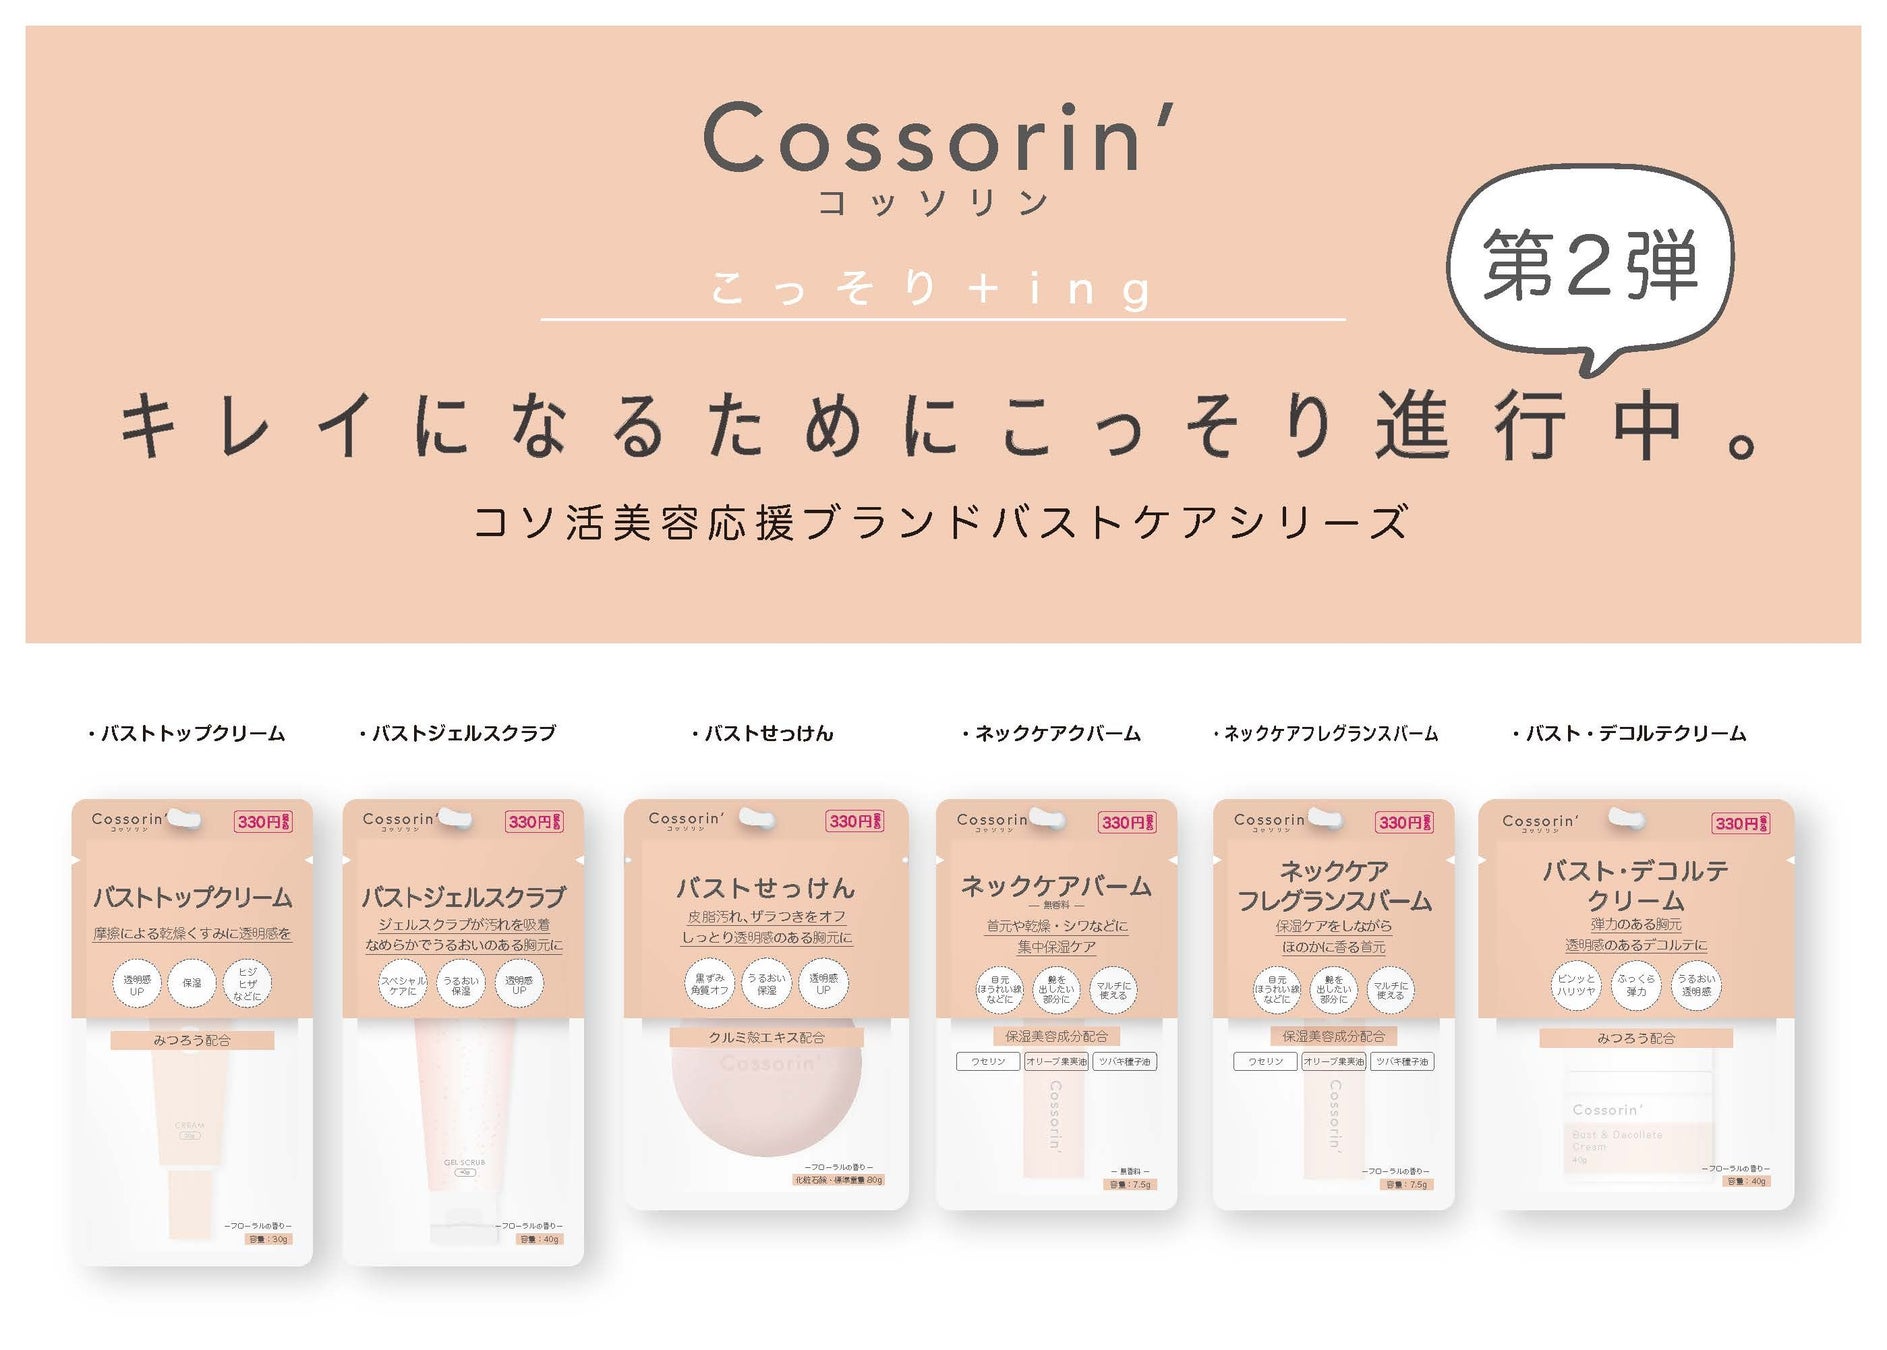 キレイになるためにこっそり進行中。コソ活美容応援ブランド『Cossorin’（コッソリン）』第2弾「バストデコルテケアシリーズ」発売！